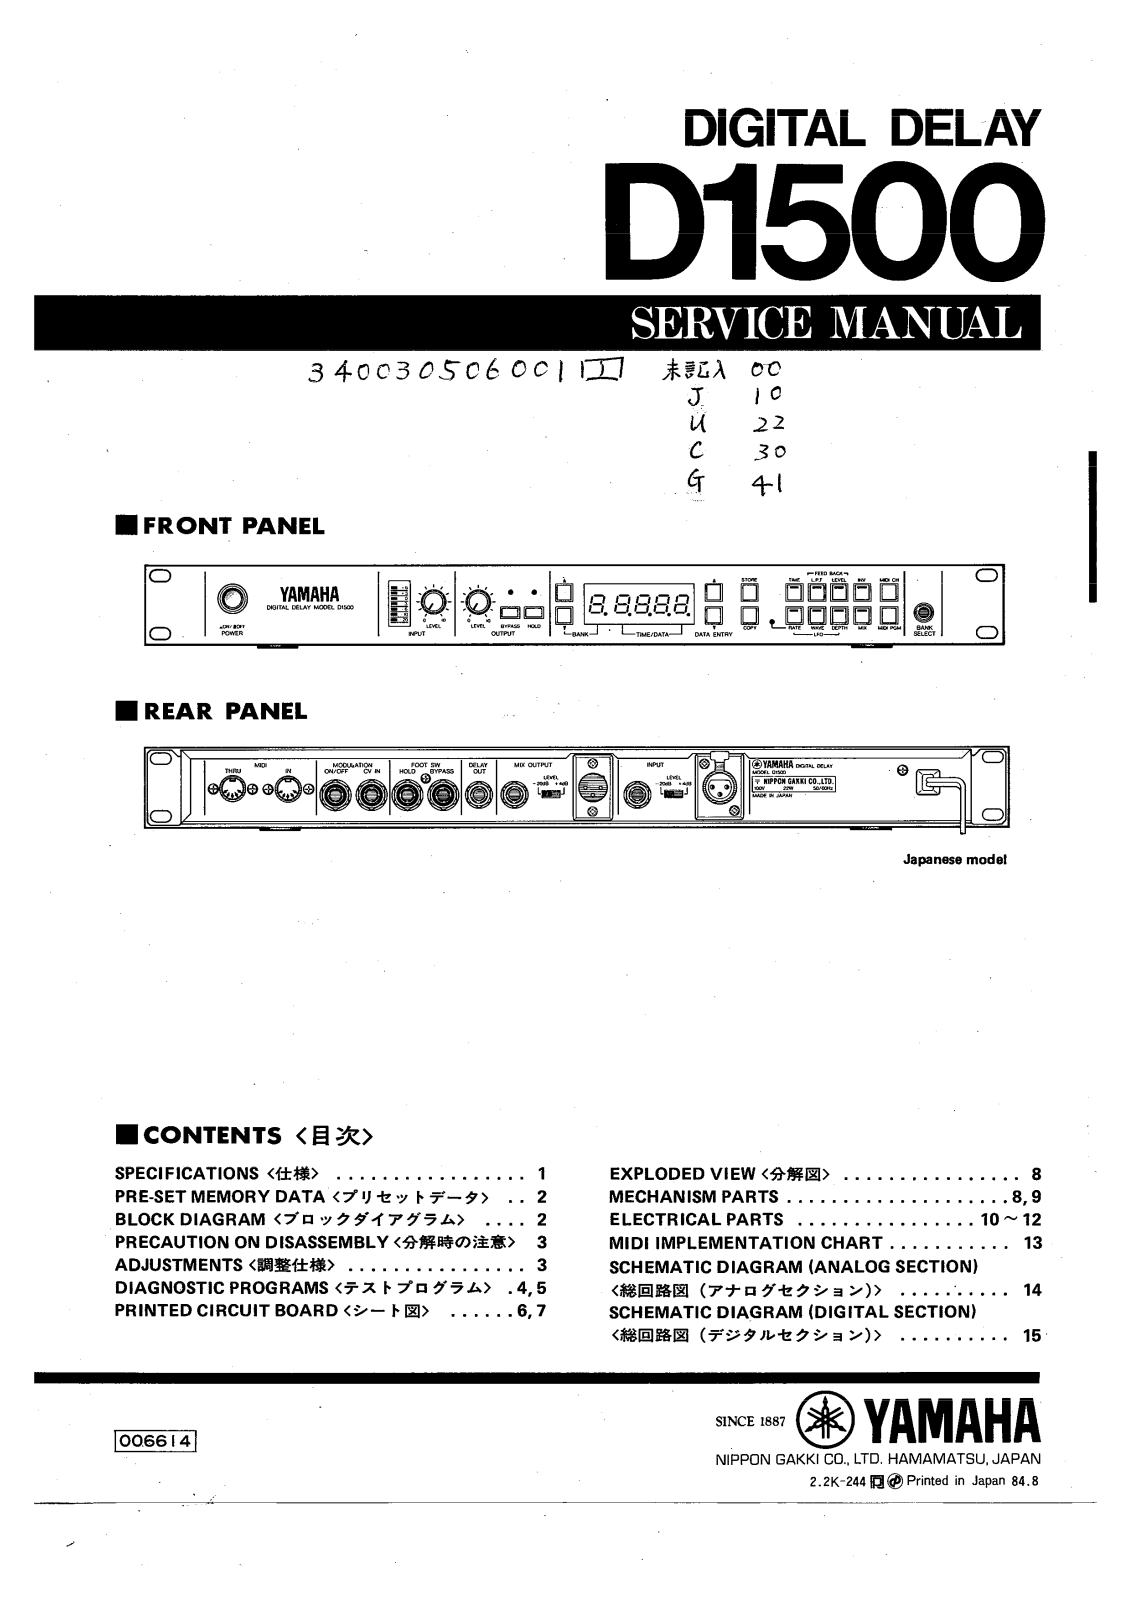 Yamaha D-1500 Service manual